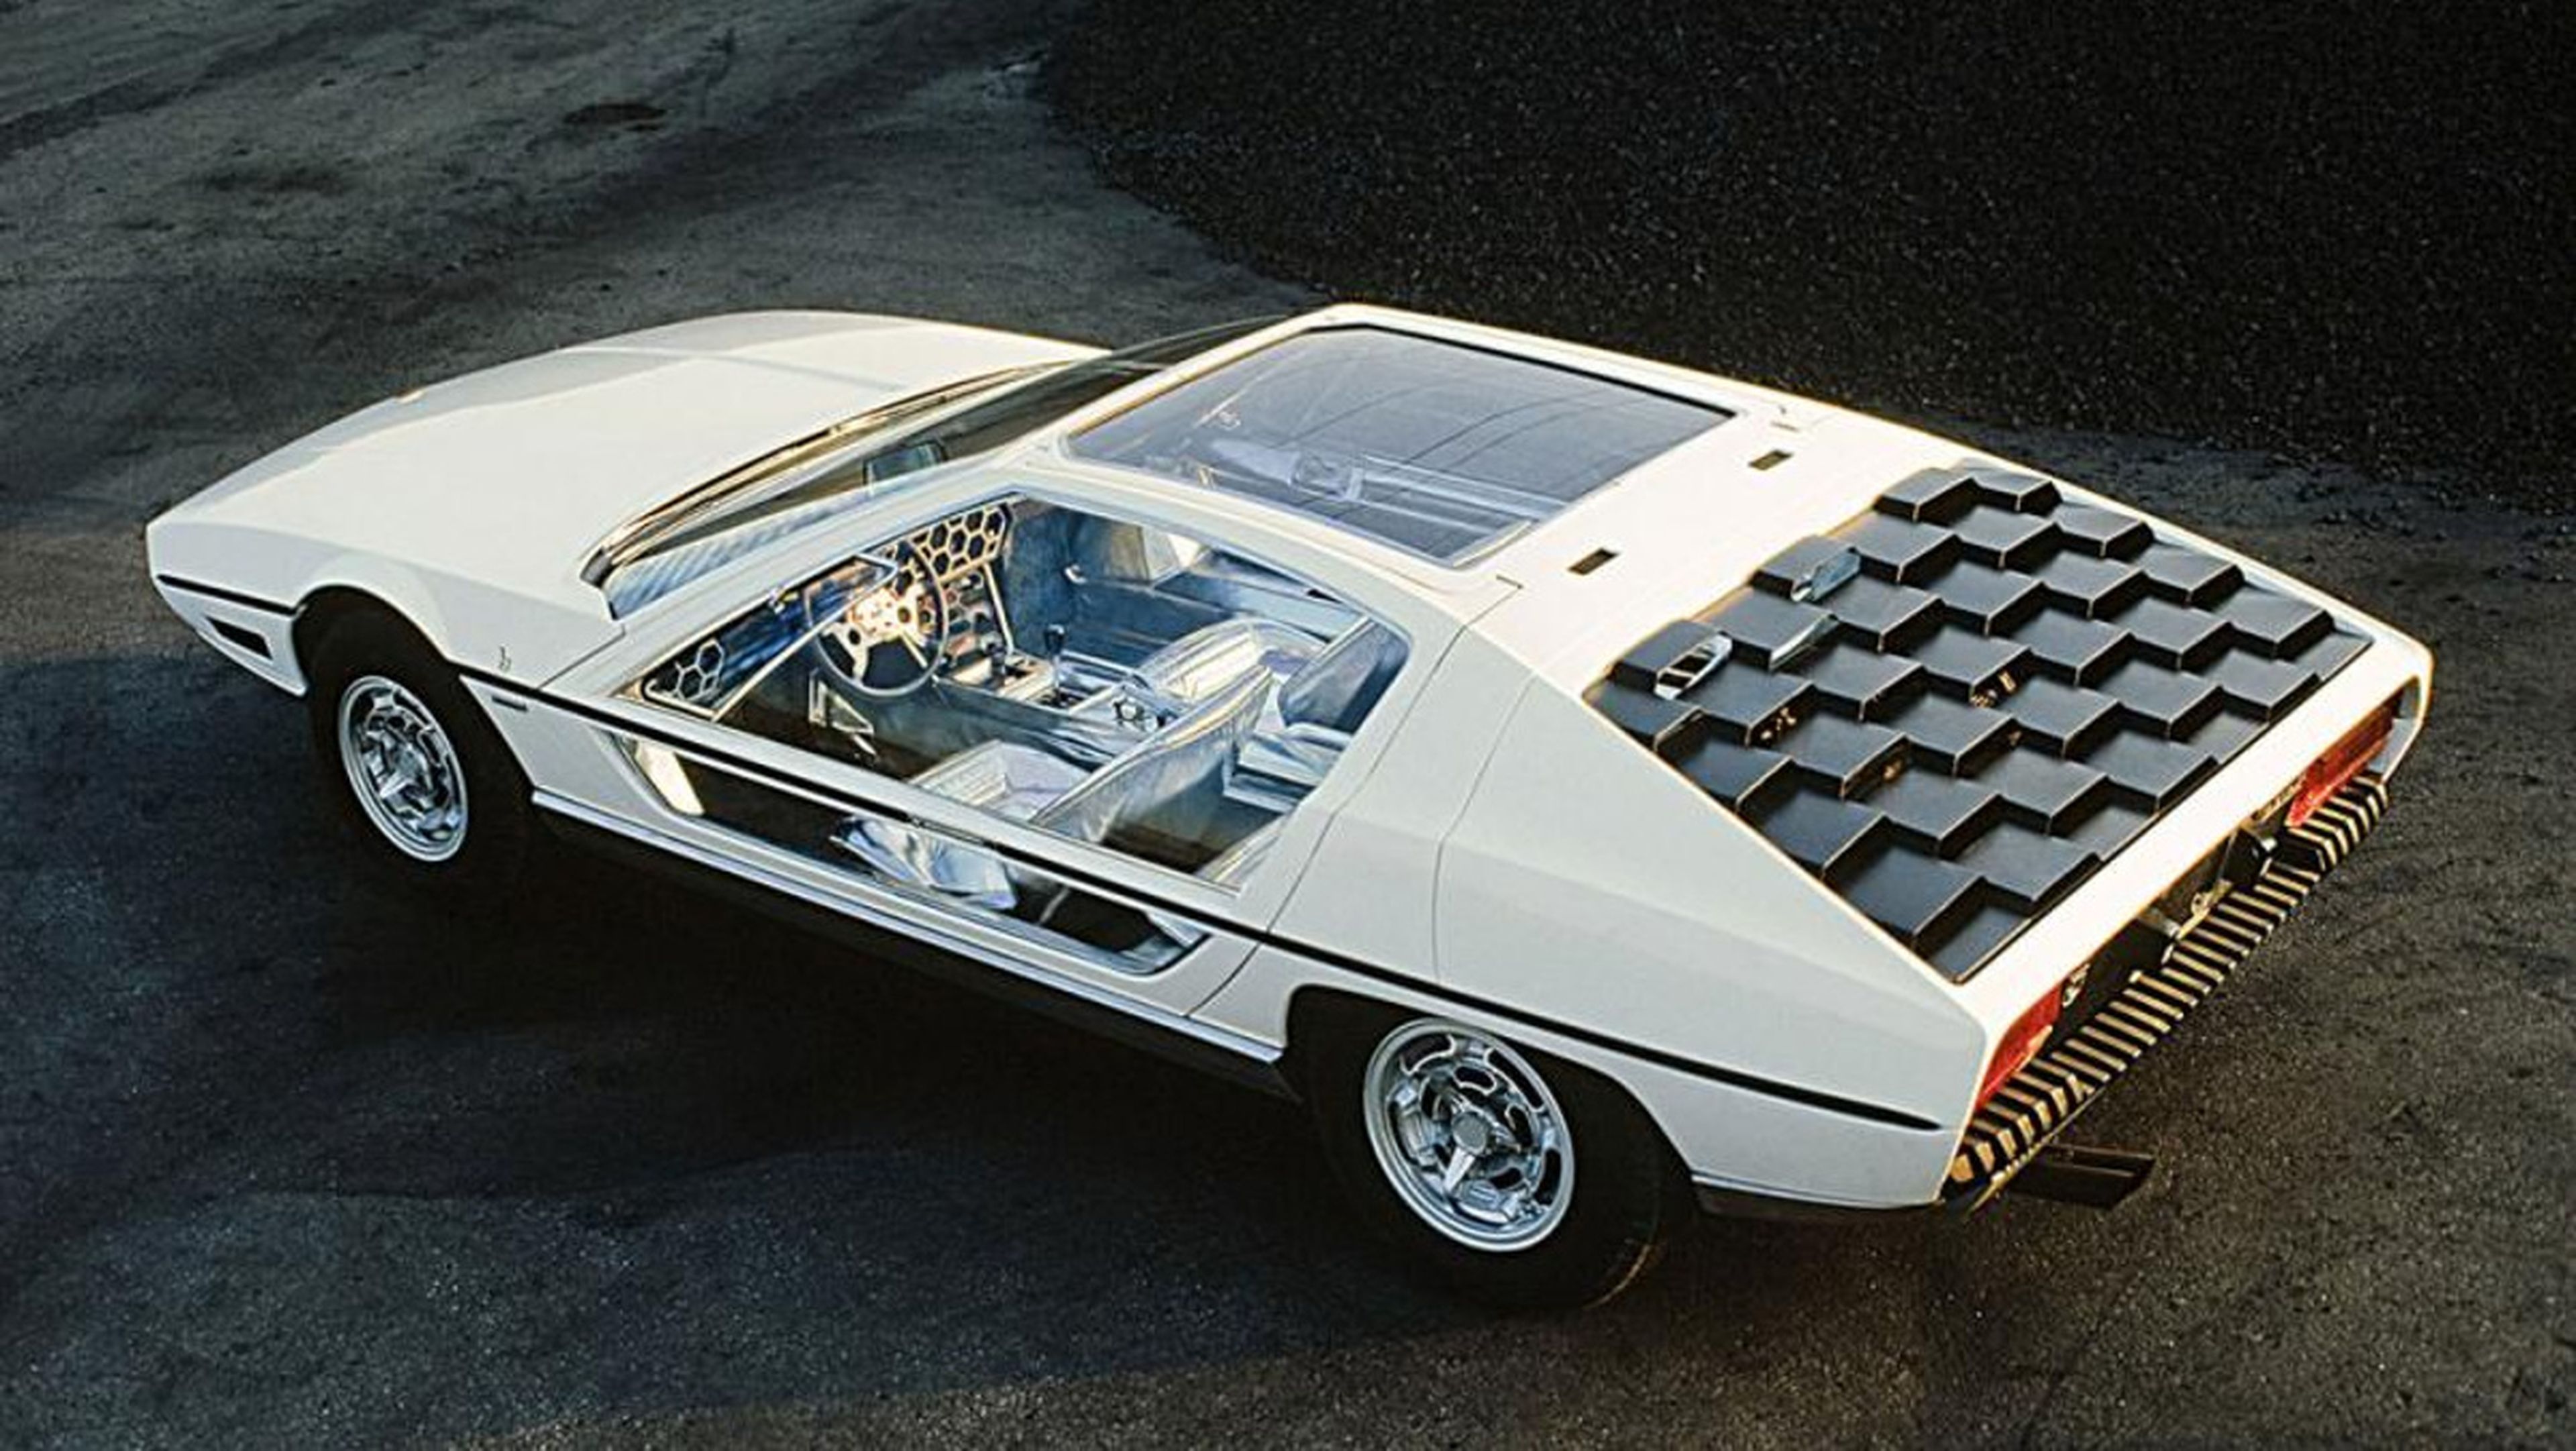 El diseño futurista del Lamborghini Marzal